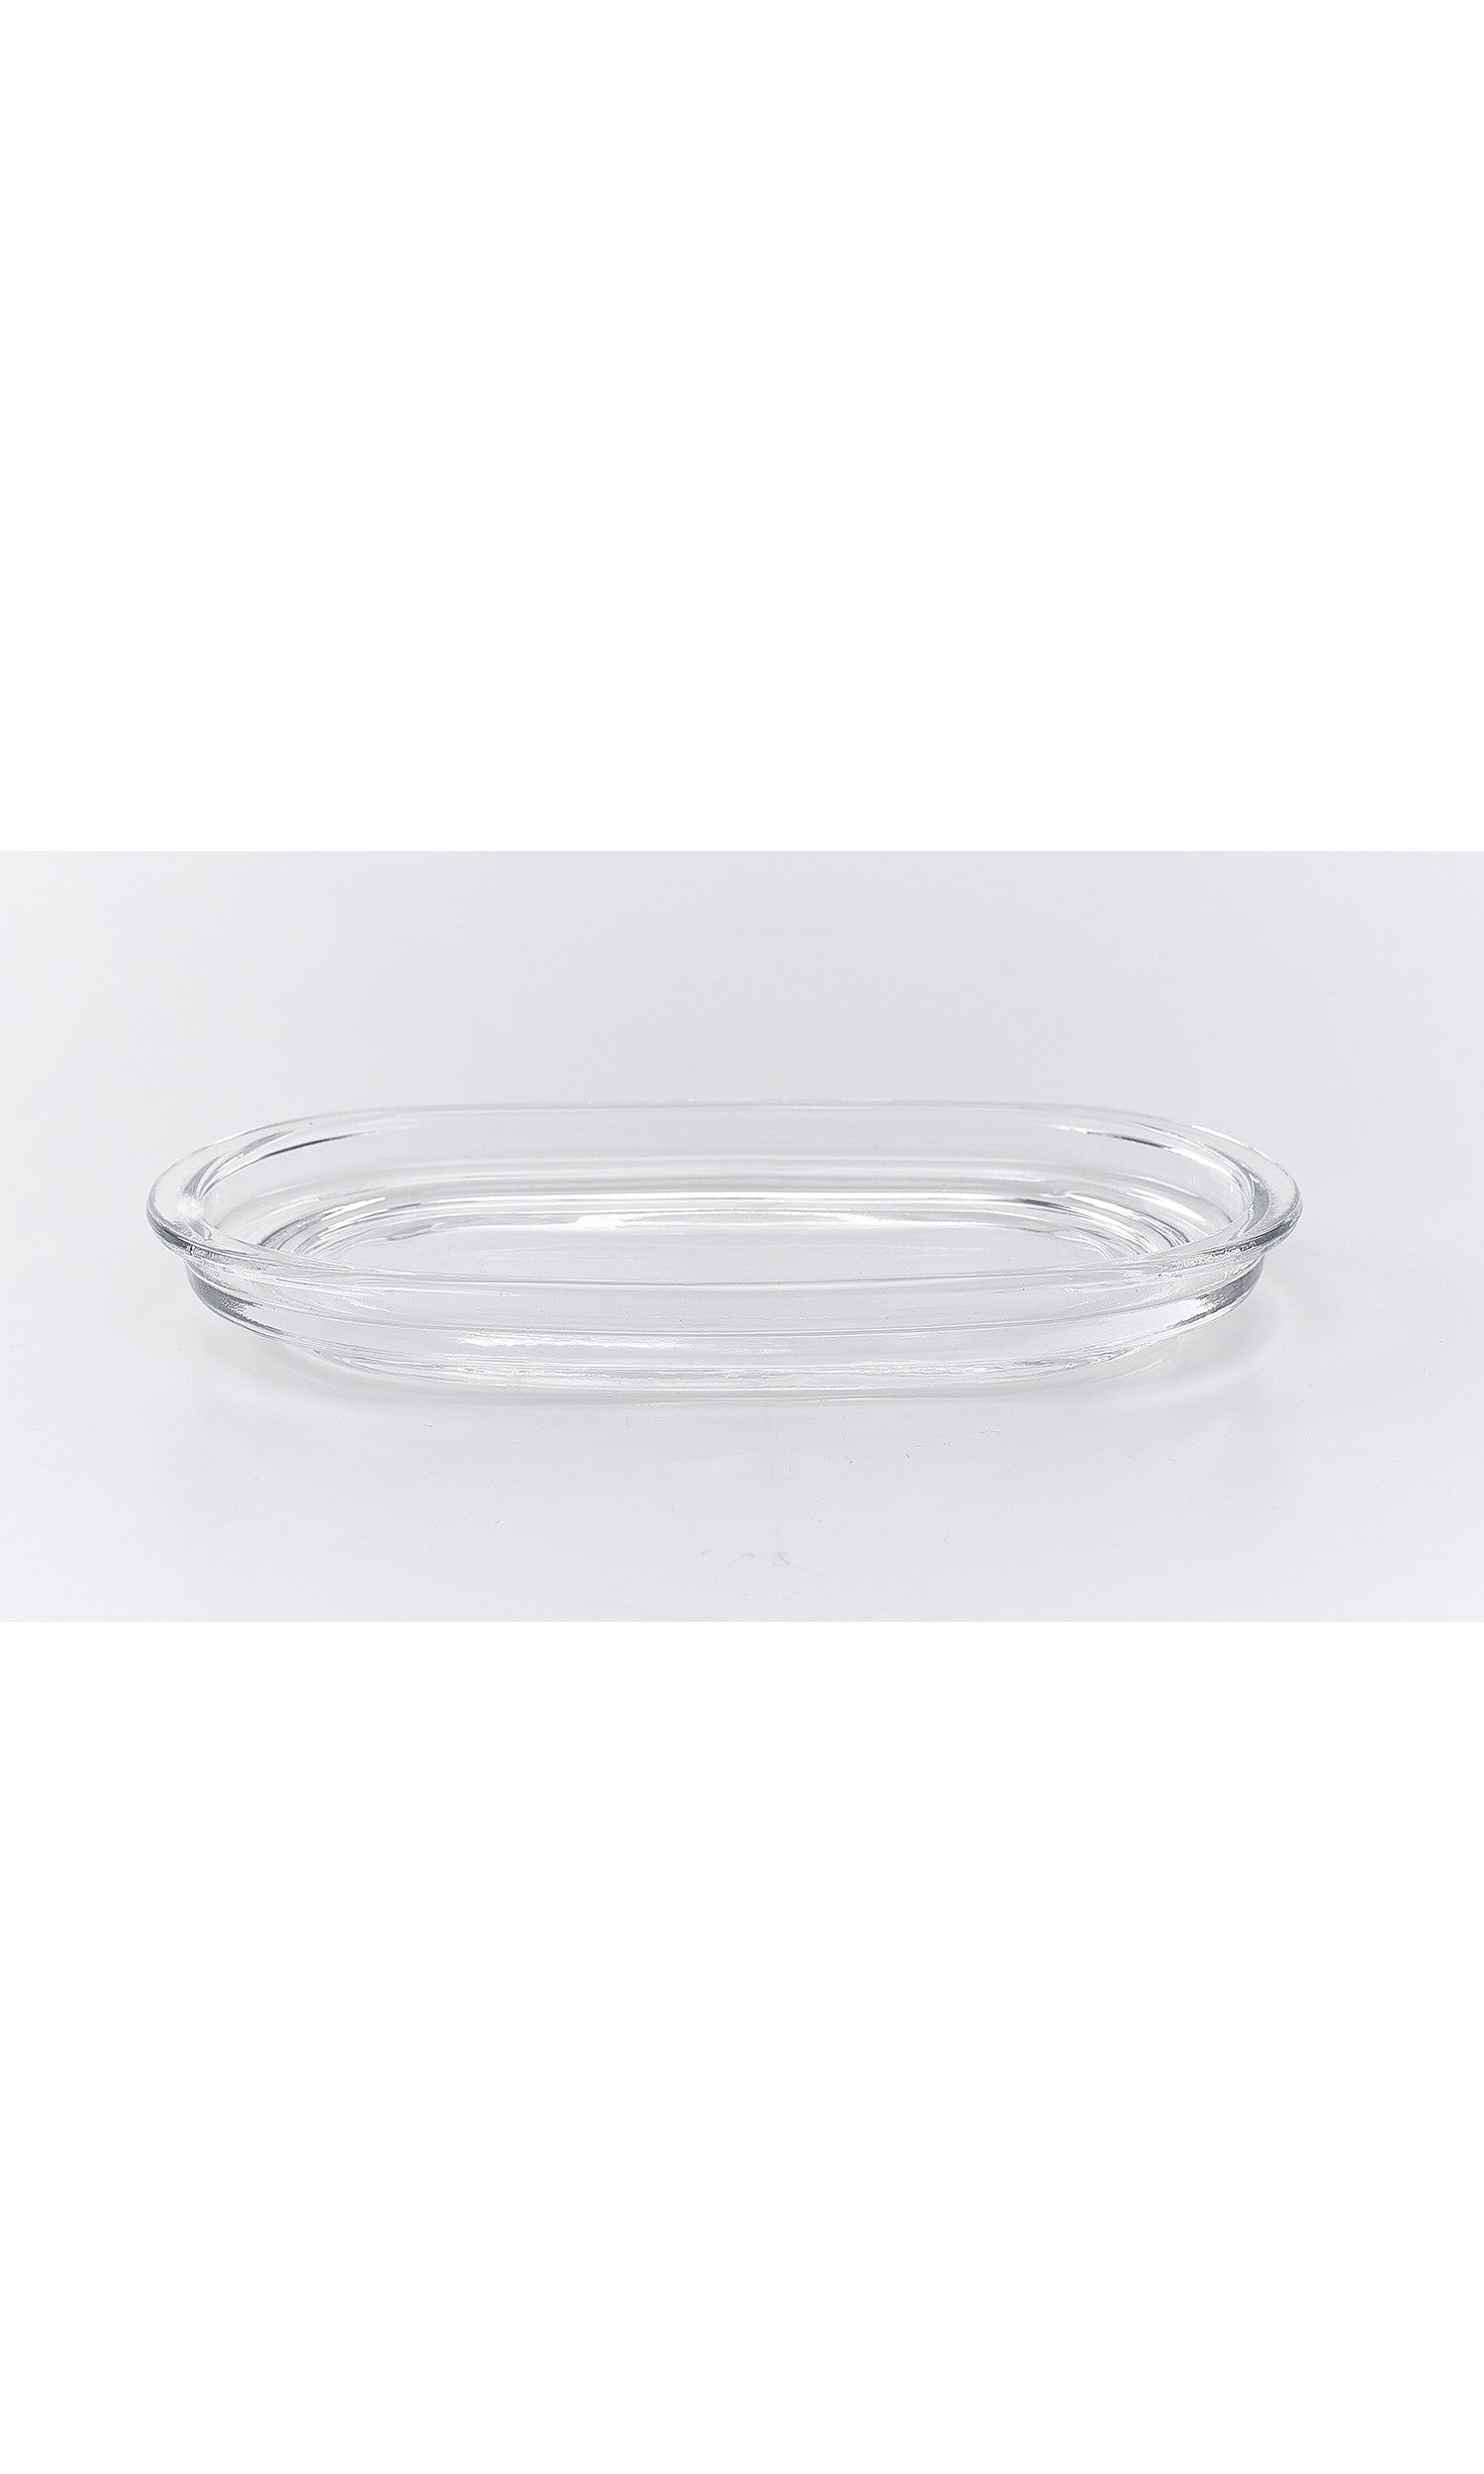 Ricambio vassoio ovale in vetro- Vebi Confezioni